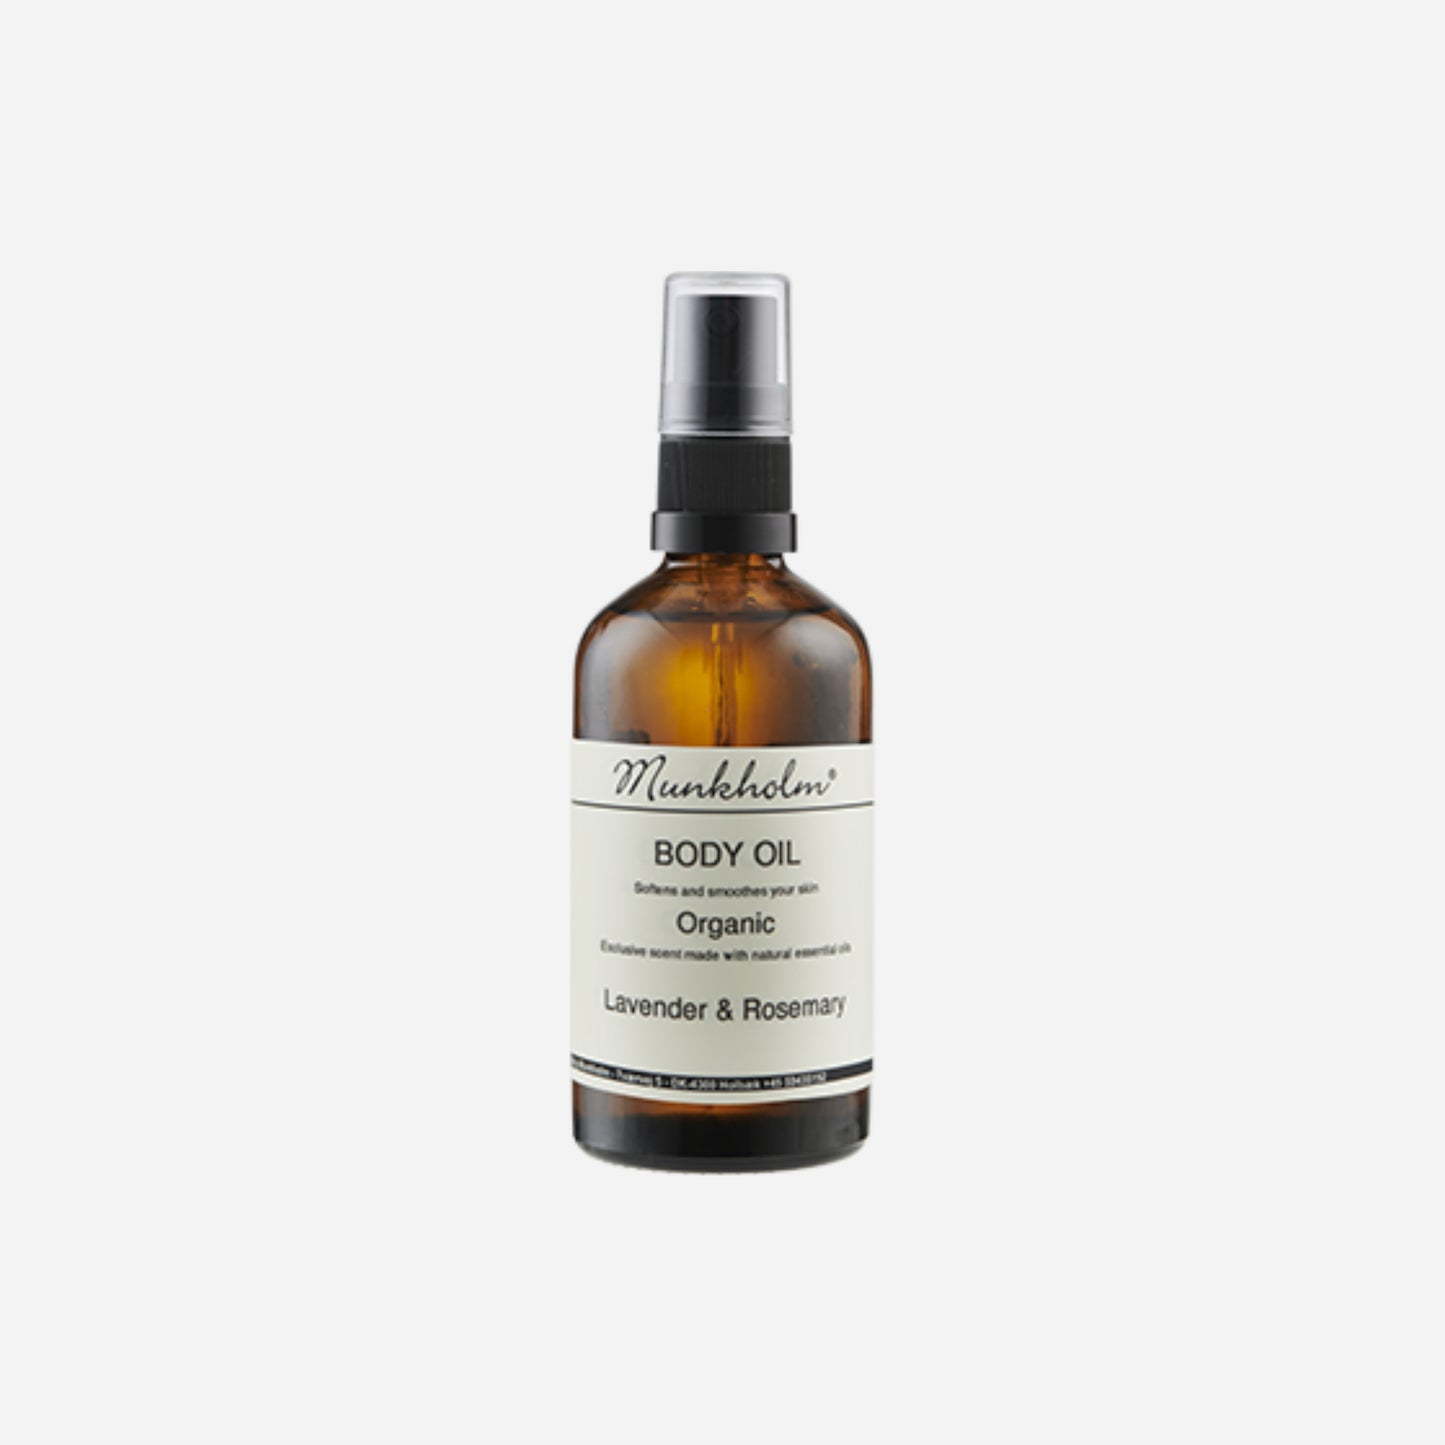 Økologisk body oil fra Munkholm, Lavender & Rosemary, 100 ml, 129 kr.